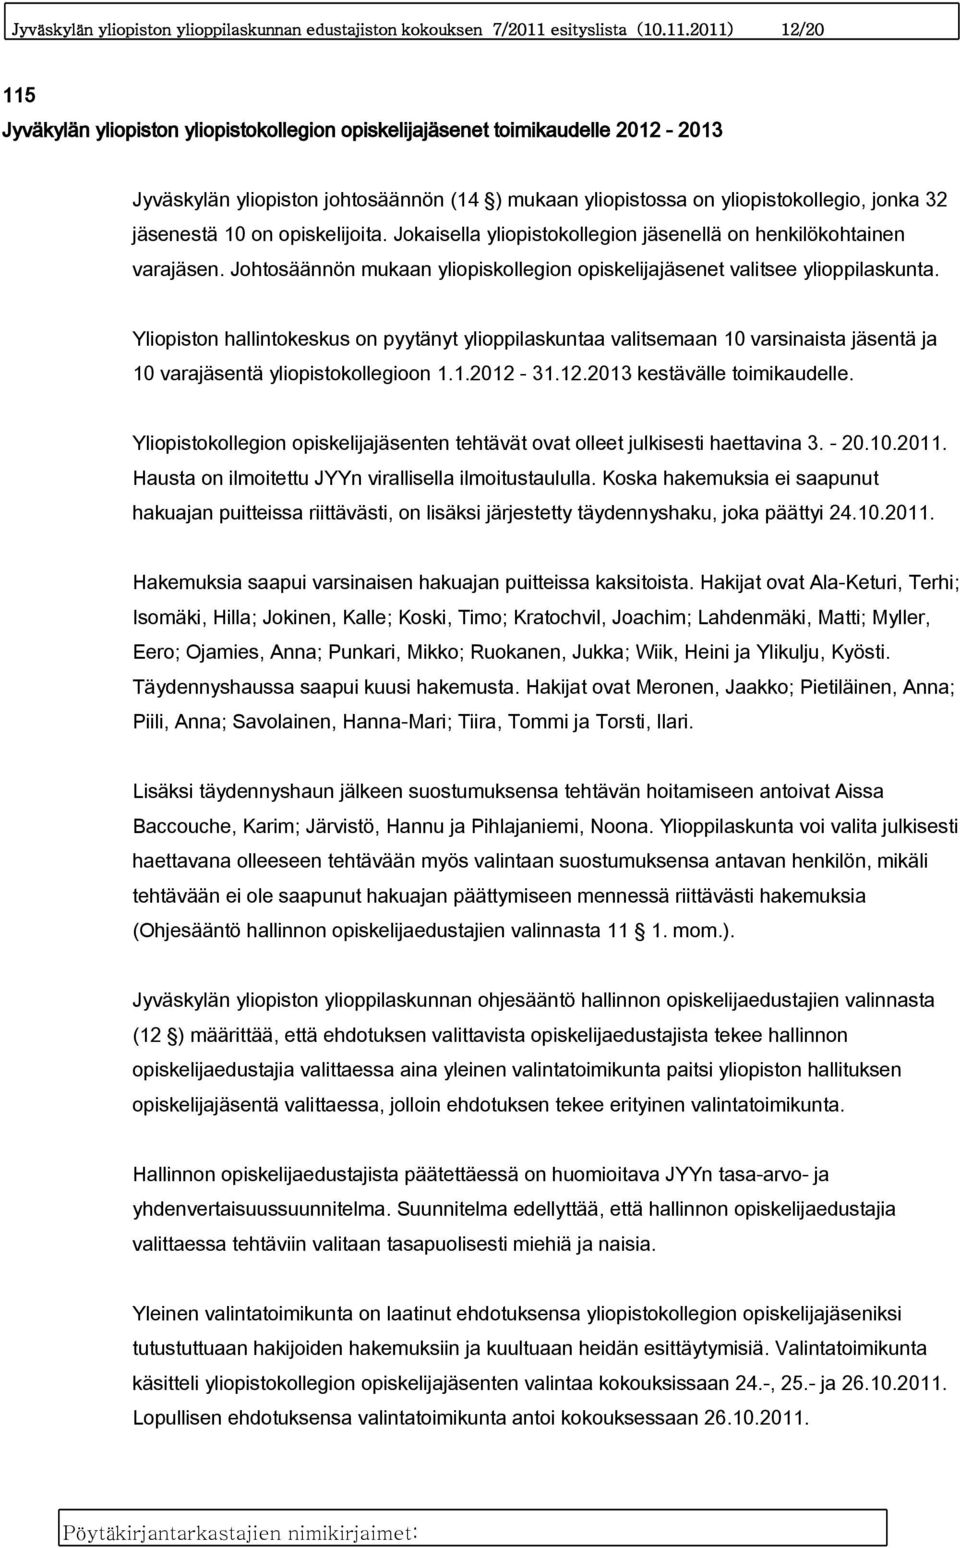 2011) 12/20 115 Jyväkylän yliopiston yliopistokollegion opiskelijajäsenet toimikaudelle 2012-2013 Jyväskylän yliopiston johtosäännön (14 ) mukaan yliopistossa on yliopistokollegio, jonka 32 jäsenestä